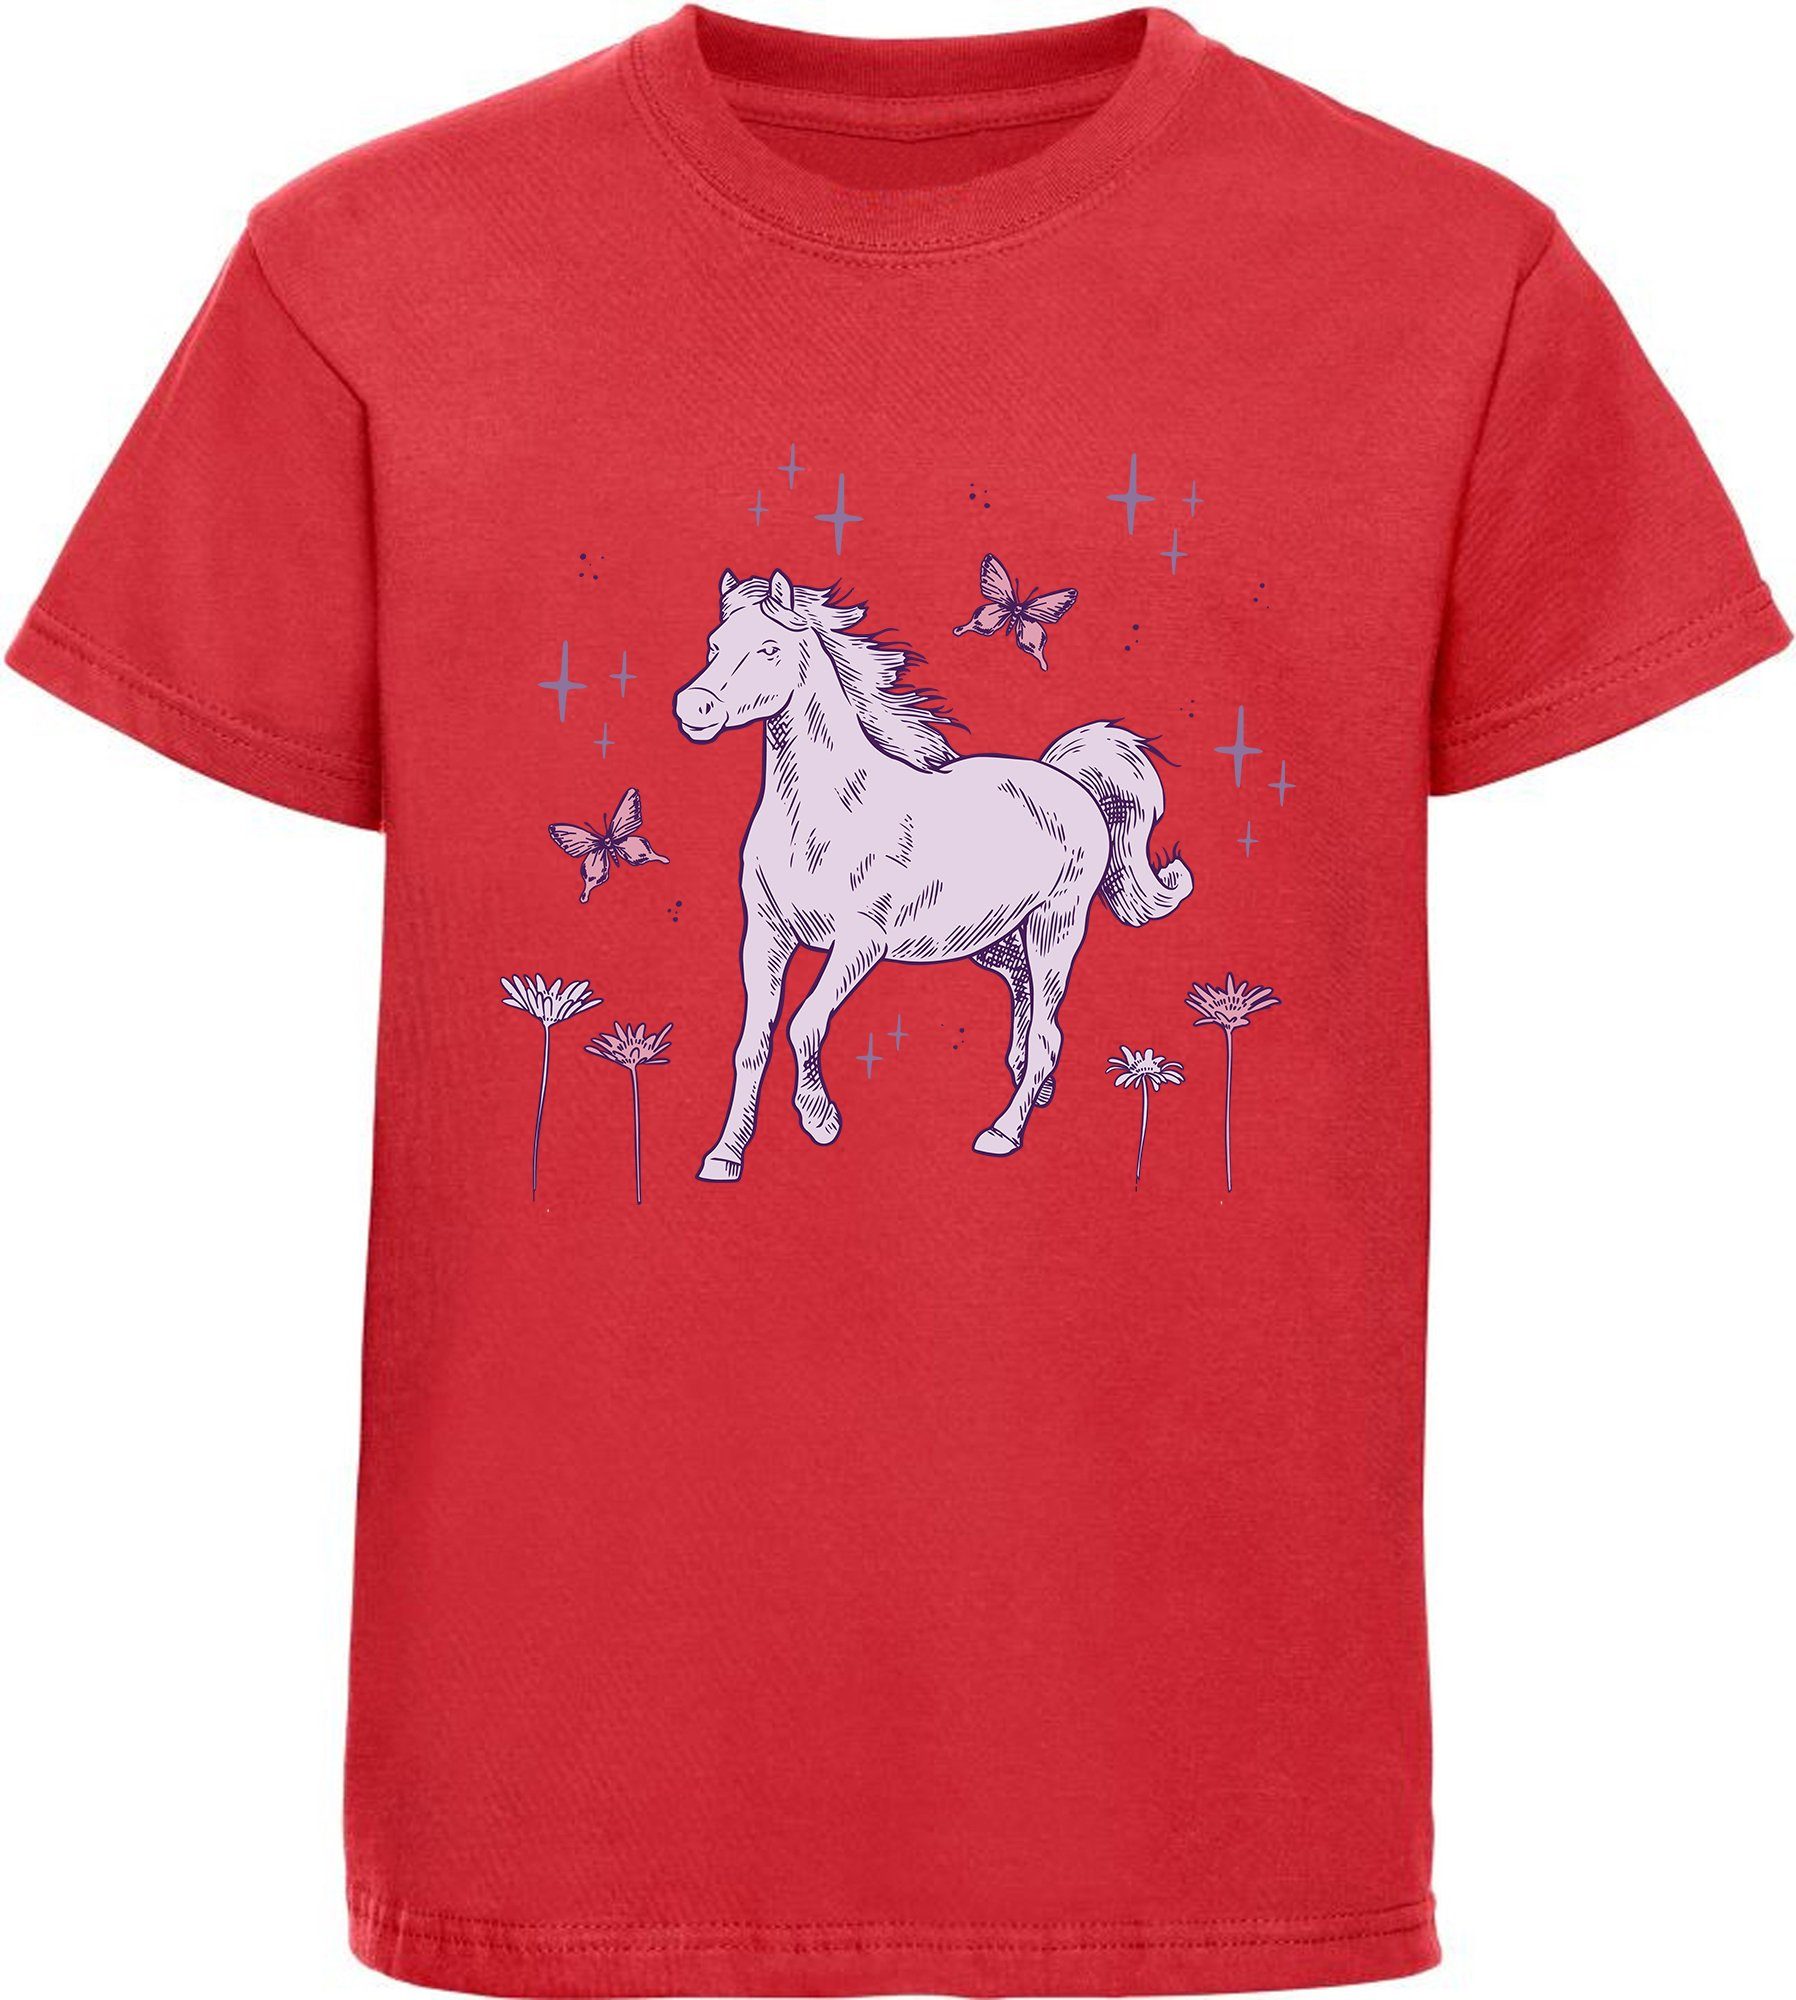 MyDesign24 Print-Shirt bedrucktes Mädchen T-Shirt galoppierendes Pferd und Blumen Baumwollshirt mit Aufdruck, i144 rot